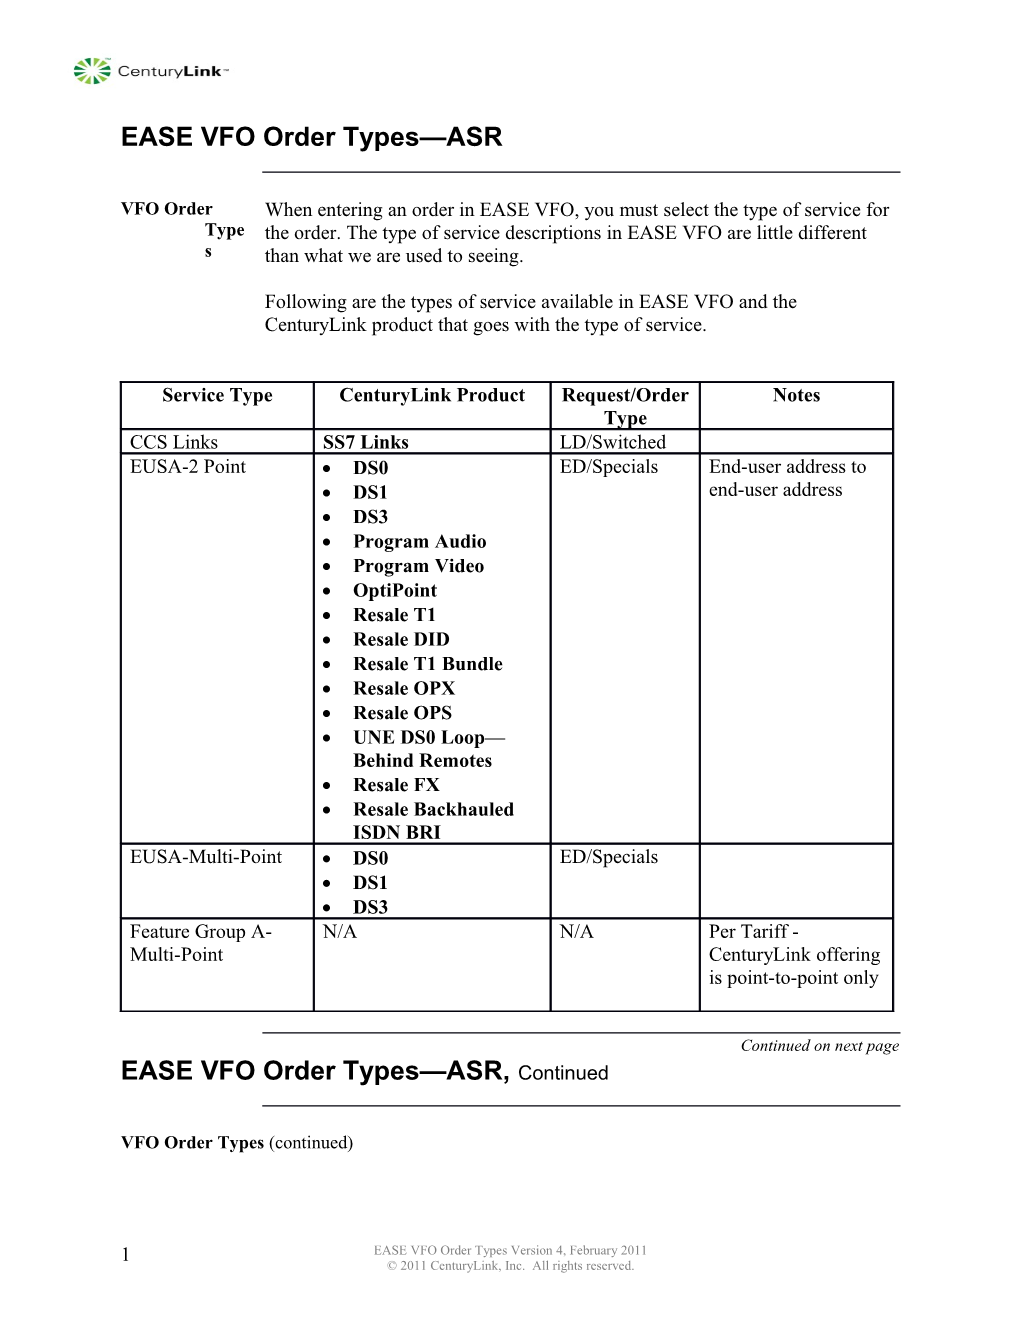 EASE VFO Order Types ASR